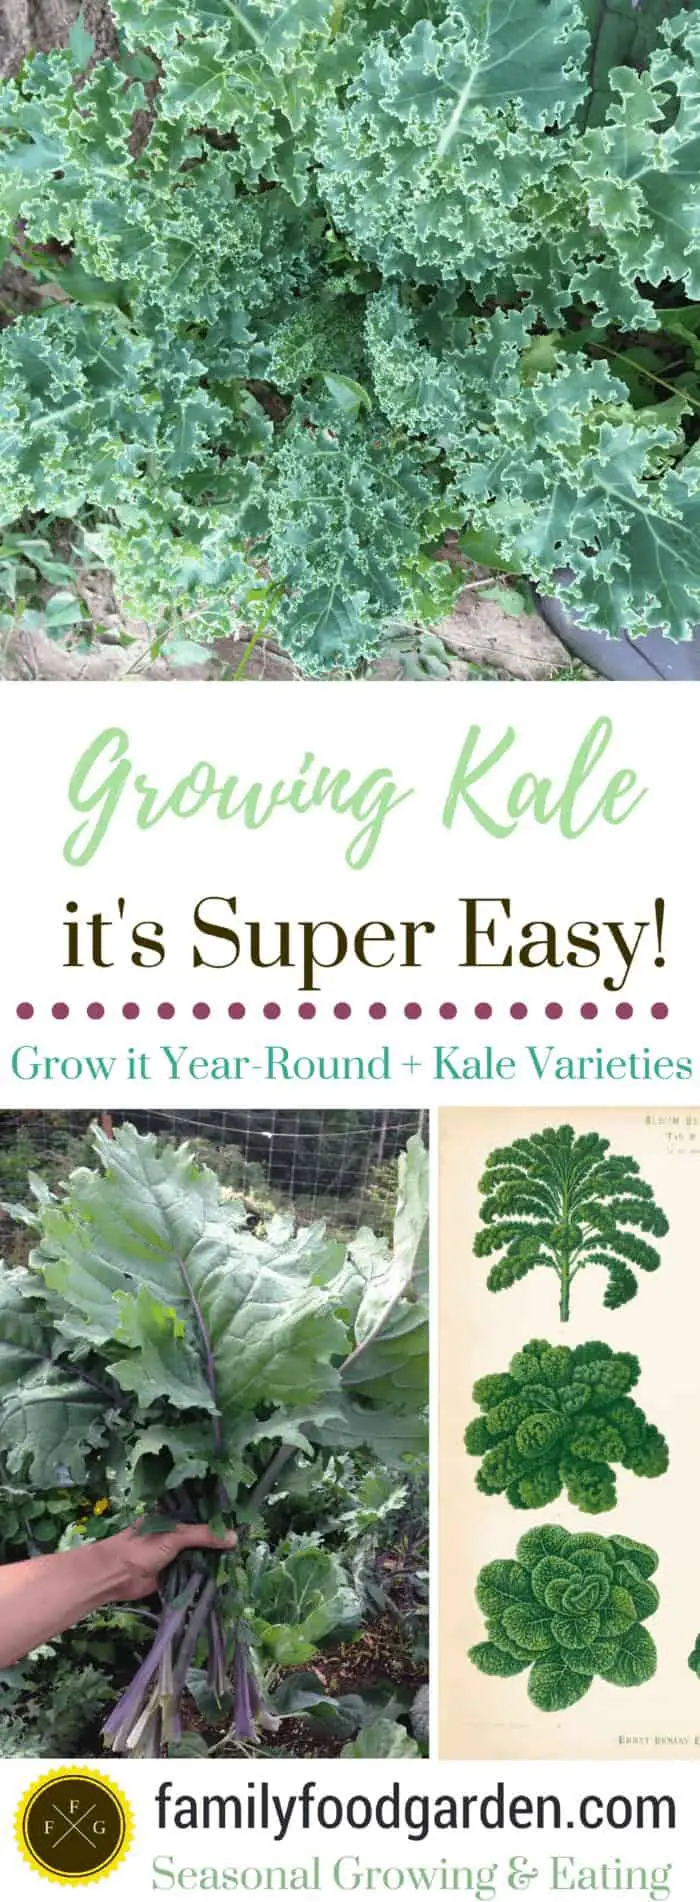 Growing Kale + Kale Varieties